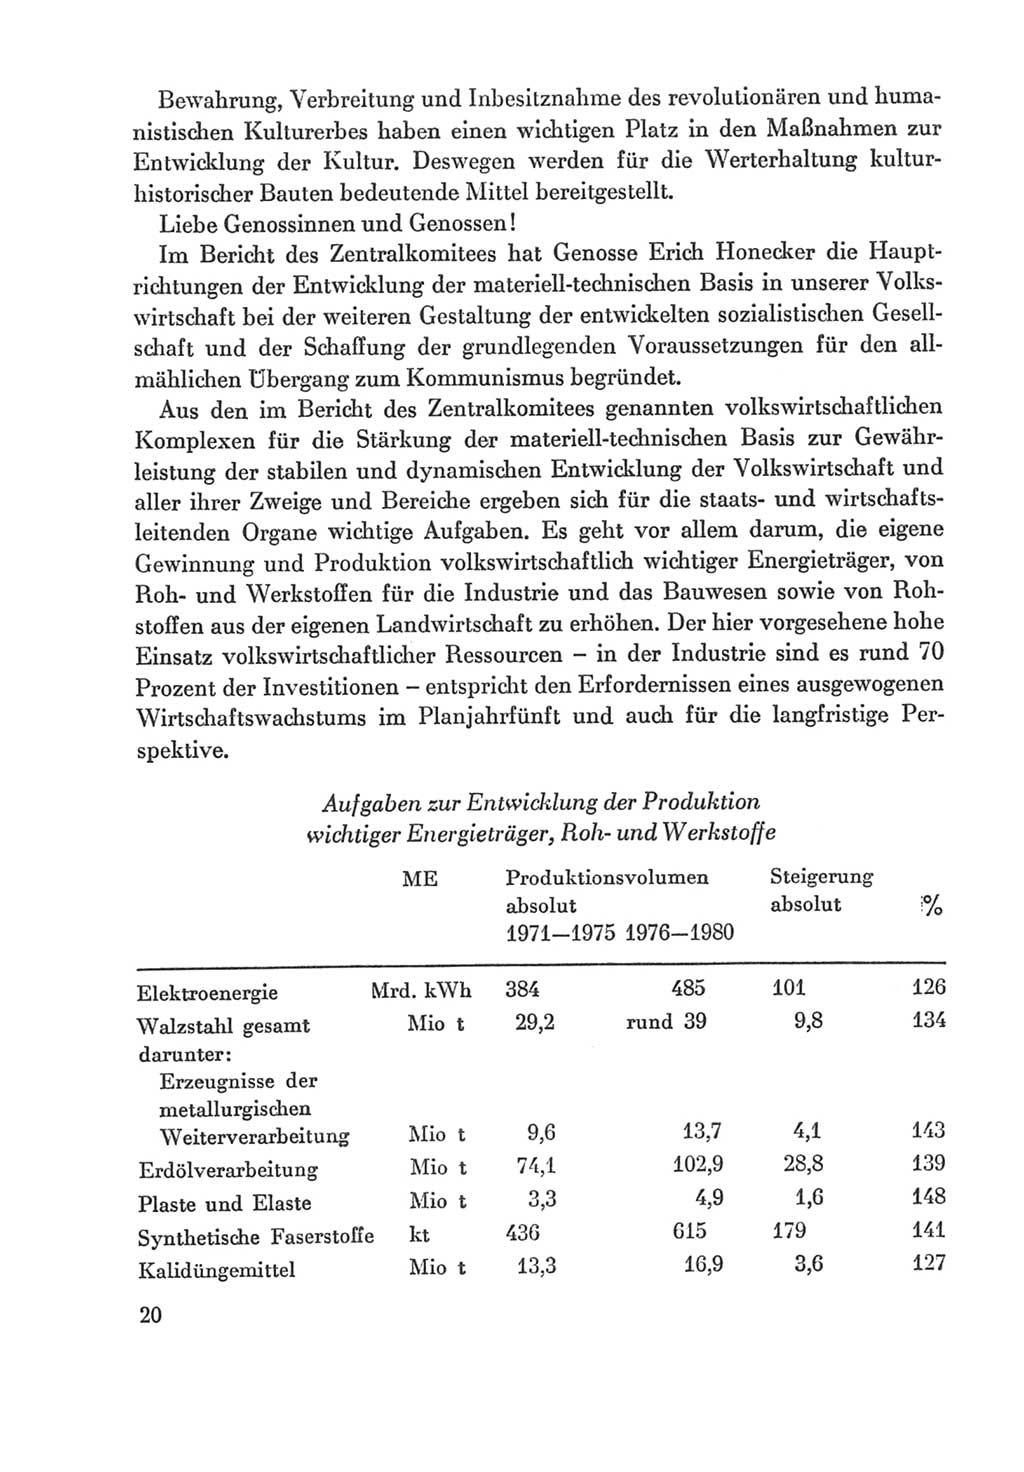 Protokoll der Verhandlungen des Ⅸ. Parteitages der Sozialistischen Einheitspartei Deutschlands (SED) [Deutsche Demokratische Republik (DDR)] 1976, Band 2, Seite 20 (Prot. Verh. Ⅸ. PT SED DDR 1976, Bd. 2, S. 20)